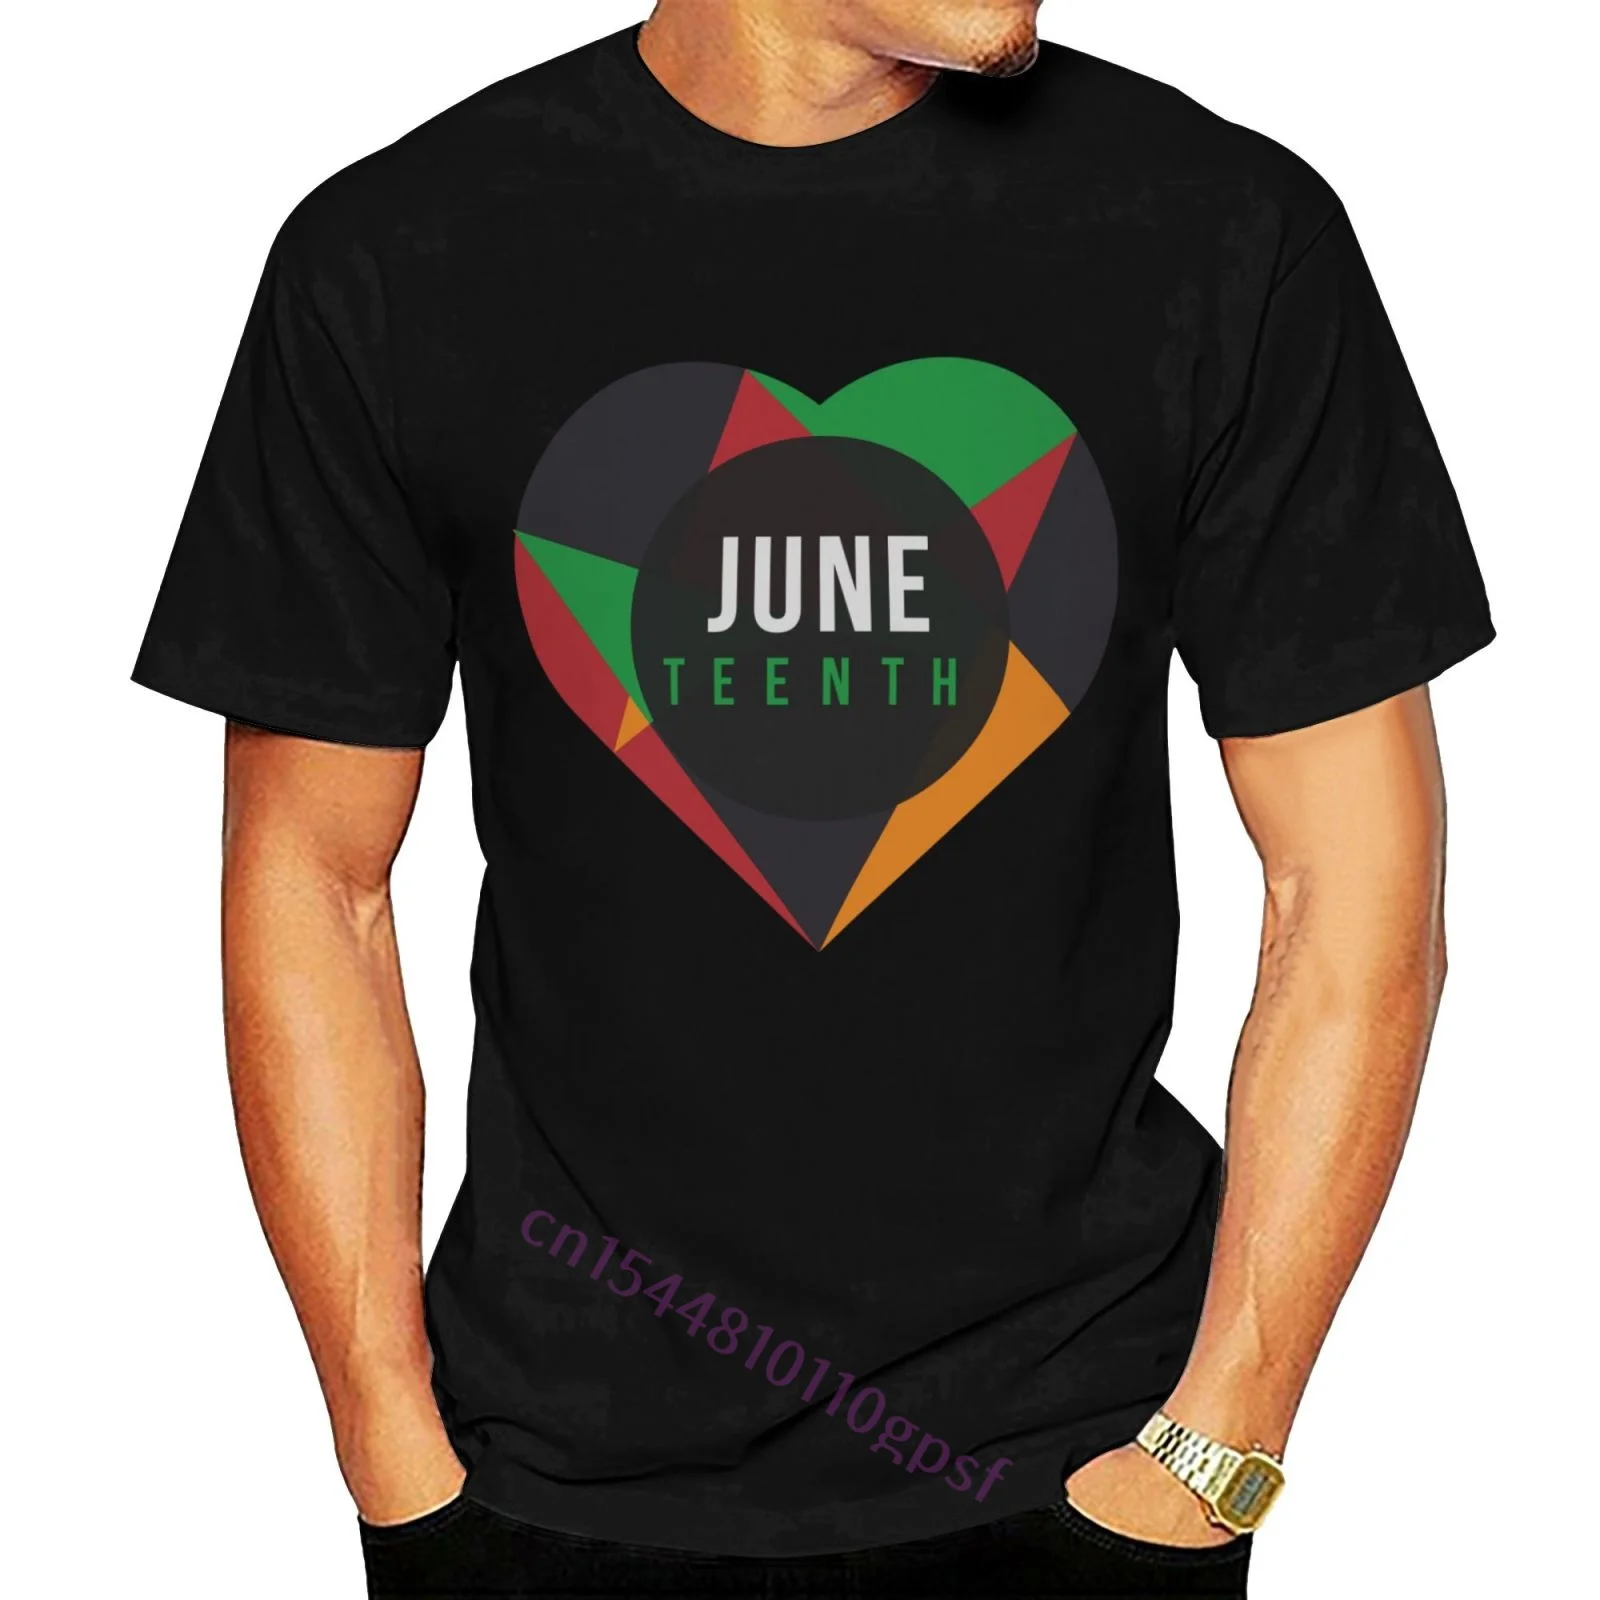 Juneenth-Camiseta de algodón para hombre, Camisa ajustada de marca, día de la libertad, 19th June